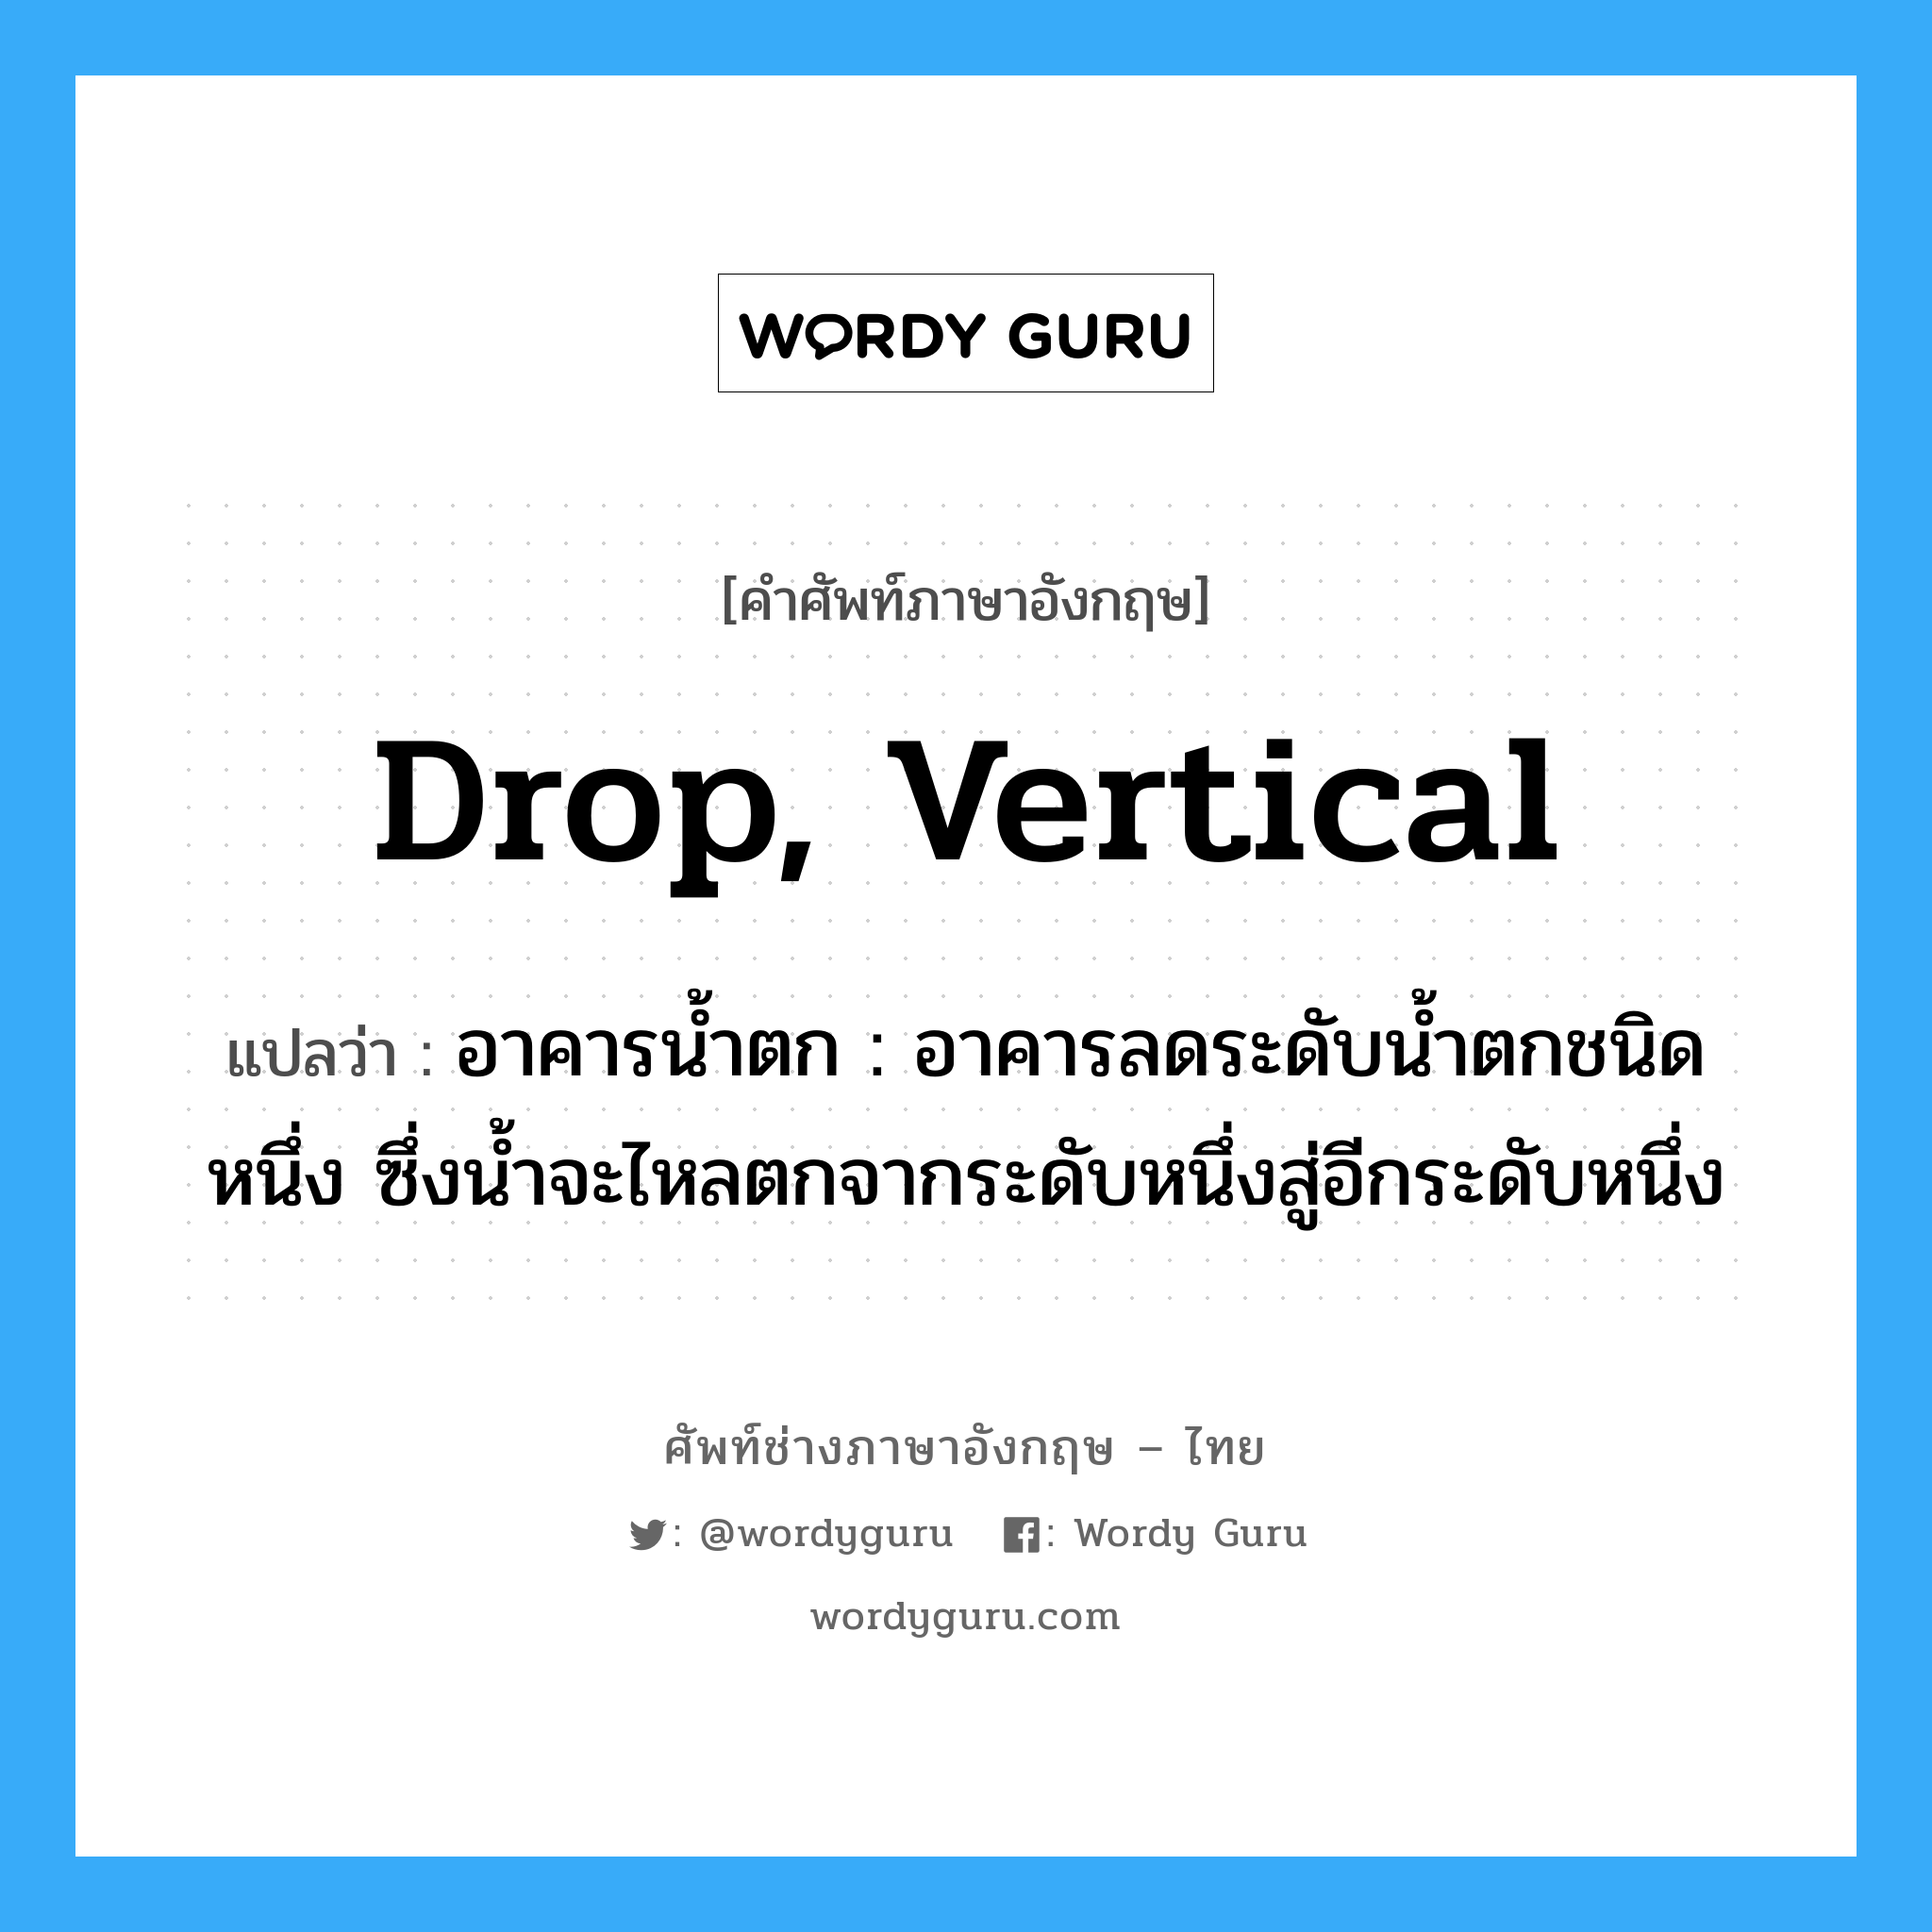 drop, vertical แปลว่า?, คำศัพท์ช่างภาษาอังกฤษ - ไทย drop, vertical คำศัพท์ภาษาอังกฤษ drop, vertical แปลว่า อาคารน้ำตก : อาคารลดระดับน้ำตกชนิดหนึ่ง ซึ่งน้ำจะไหลตกจากระดับหนึ่งสู่อีกระดับหนึ่ง